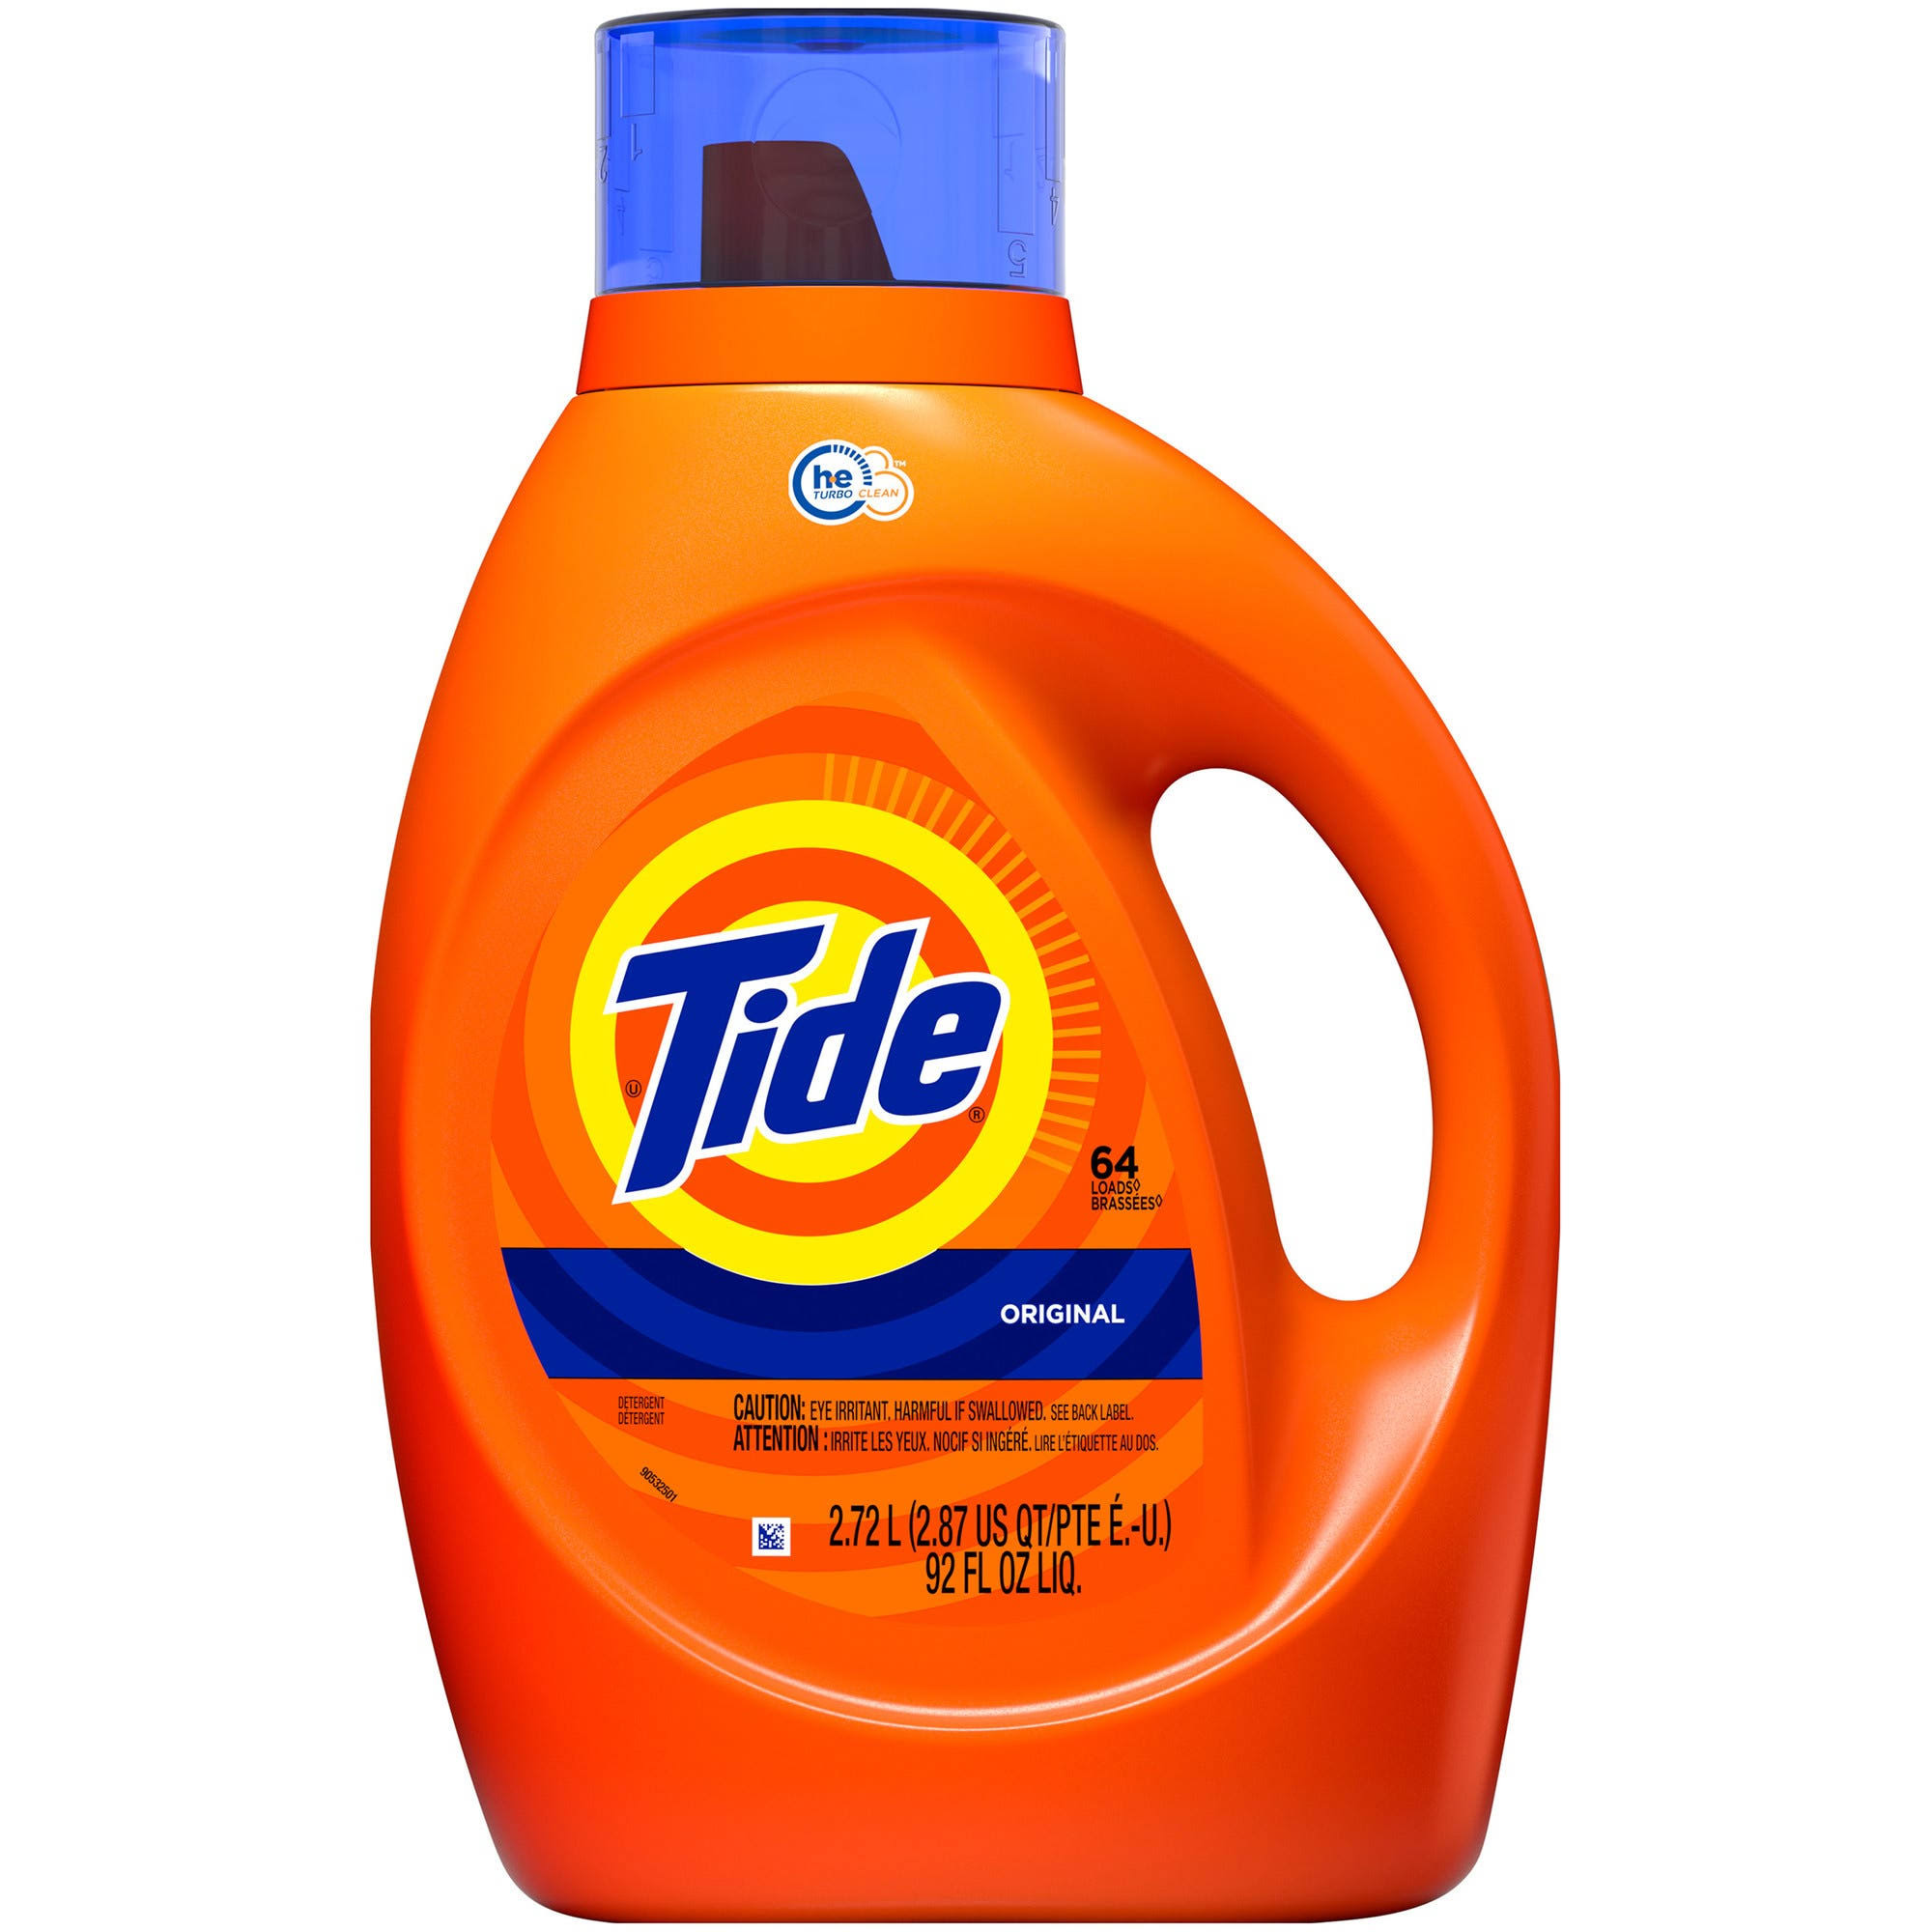 Tide Detergent, Original - 2.72 l (2.87 qt) 92 fl oz